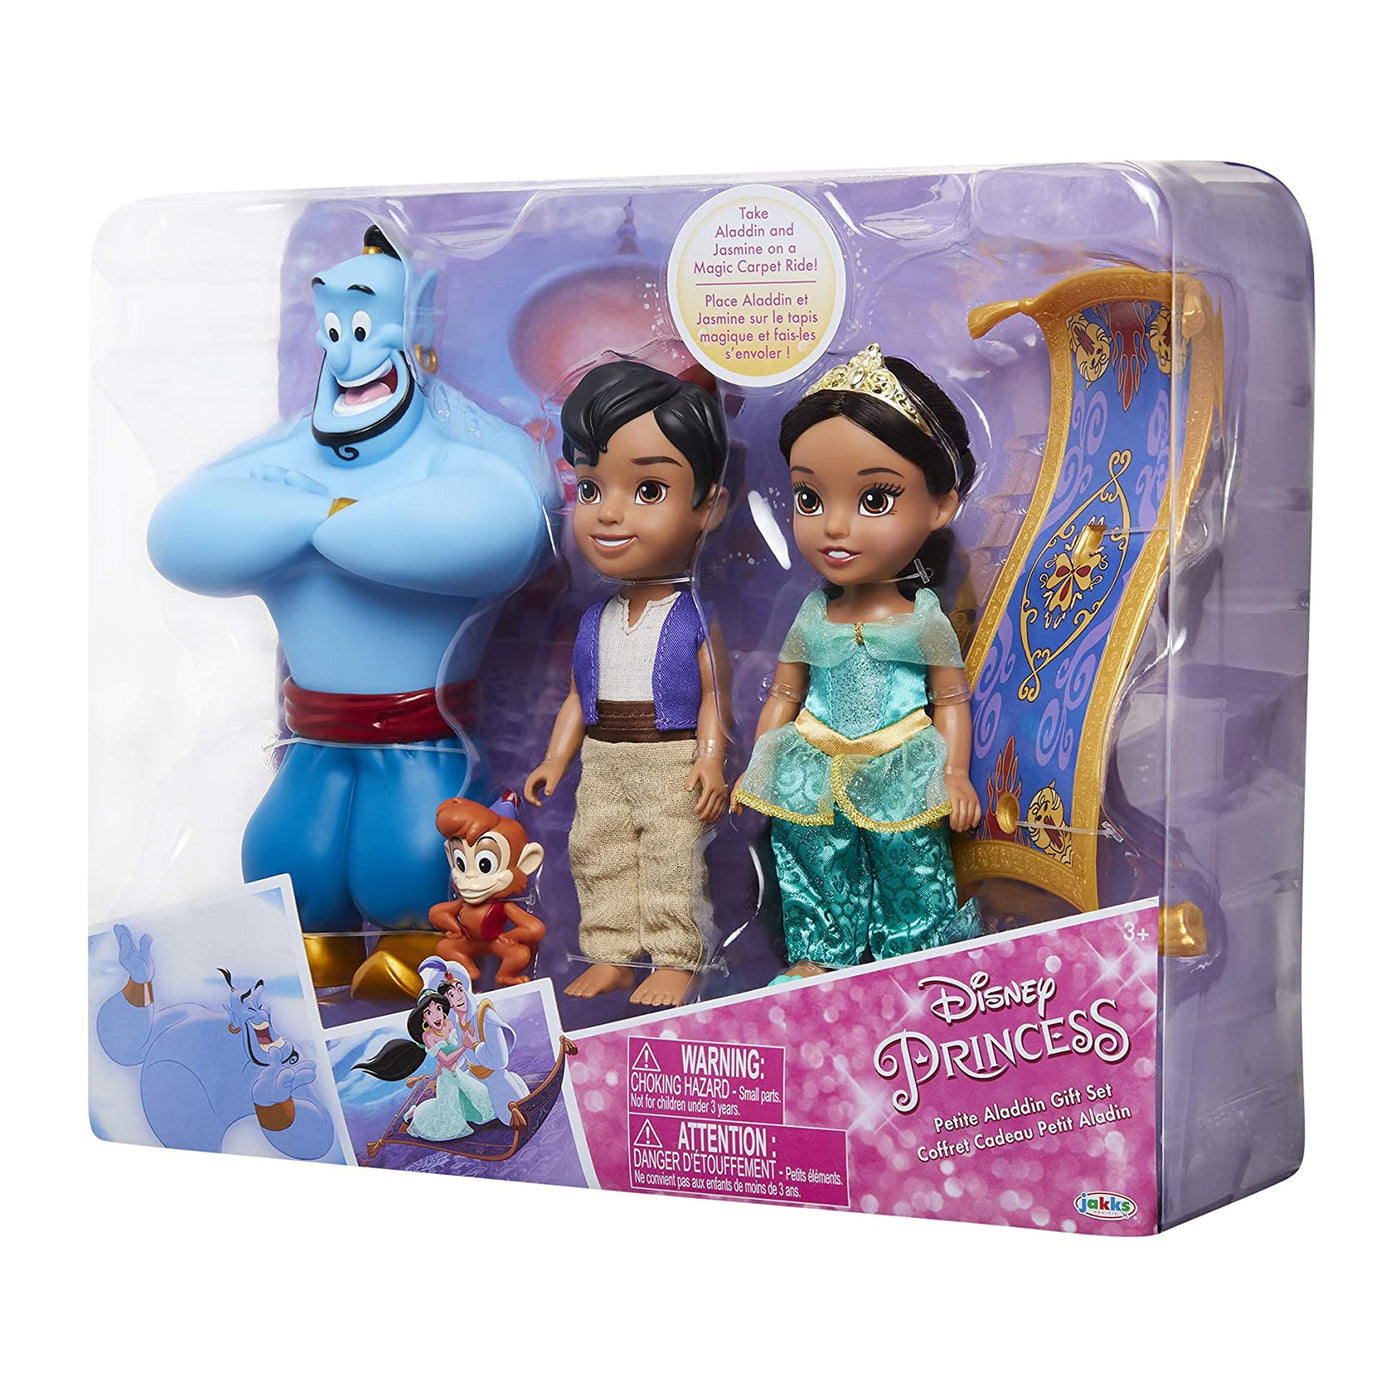 Aladdin & Jasmine. Disney princess , Aladdin , Disney princess